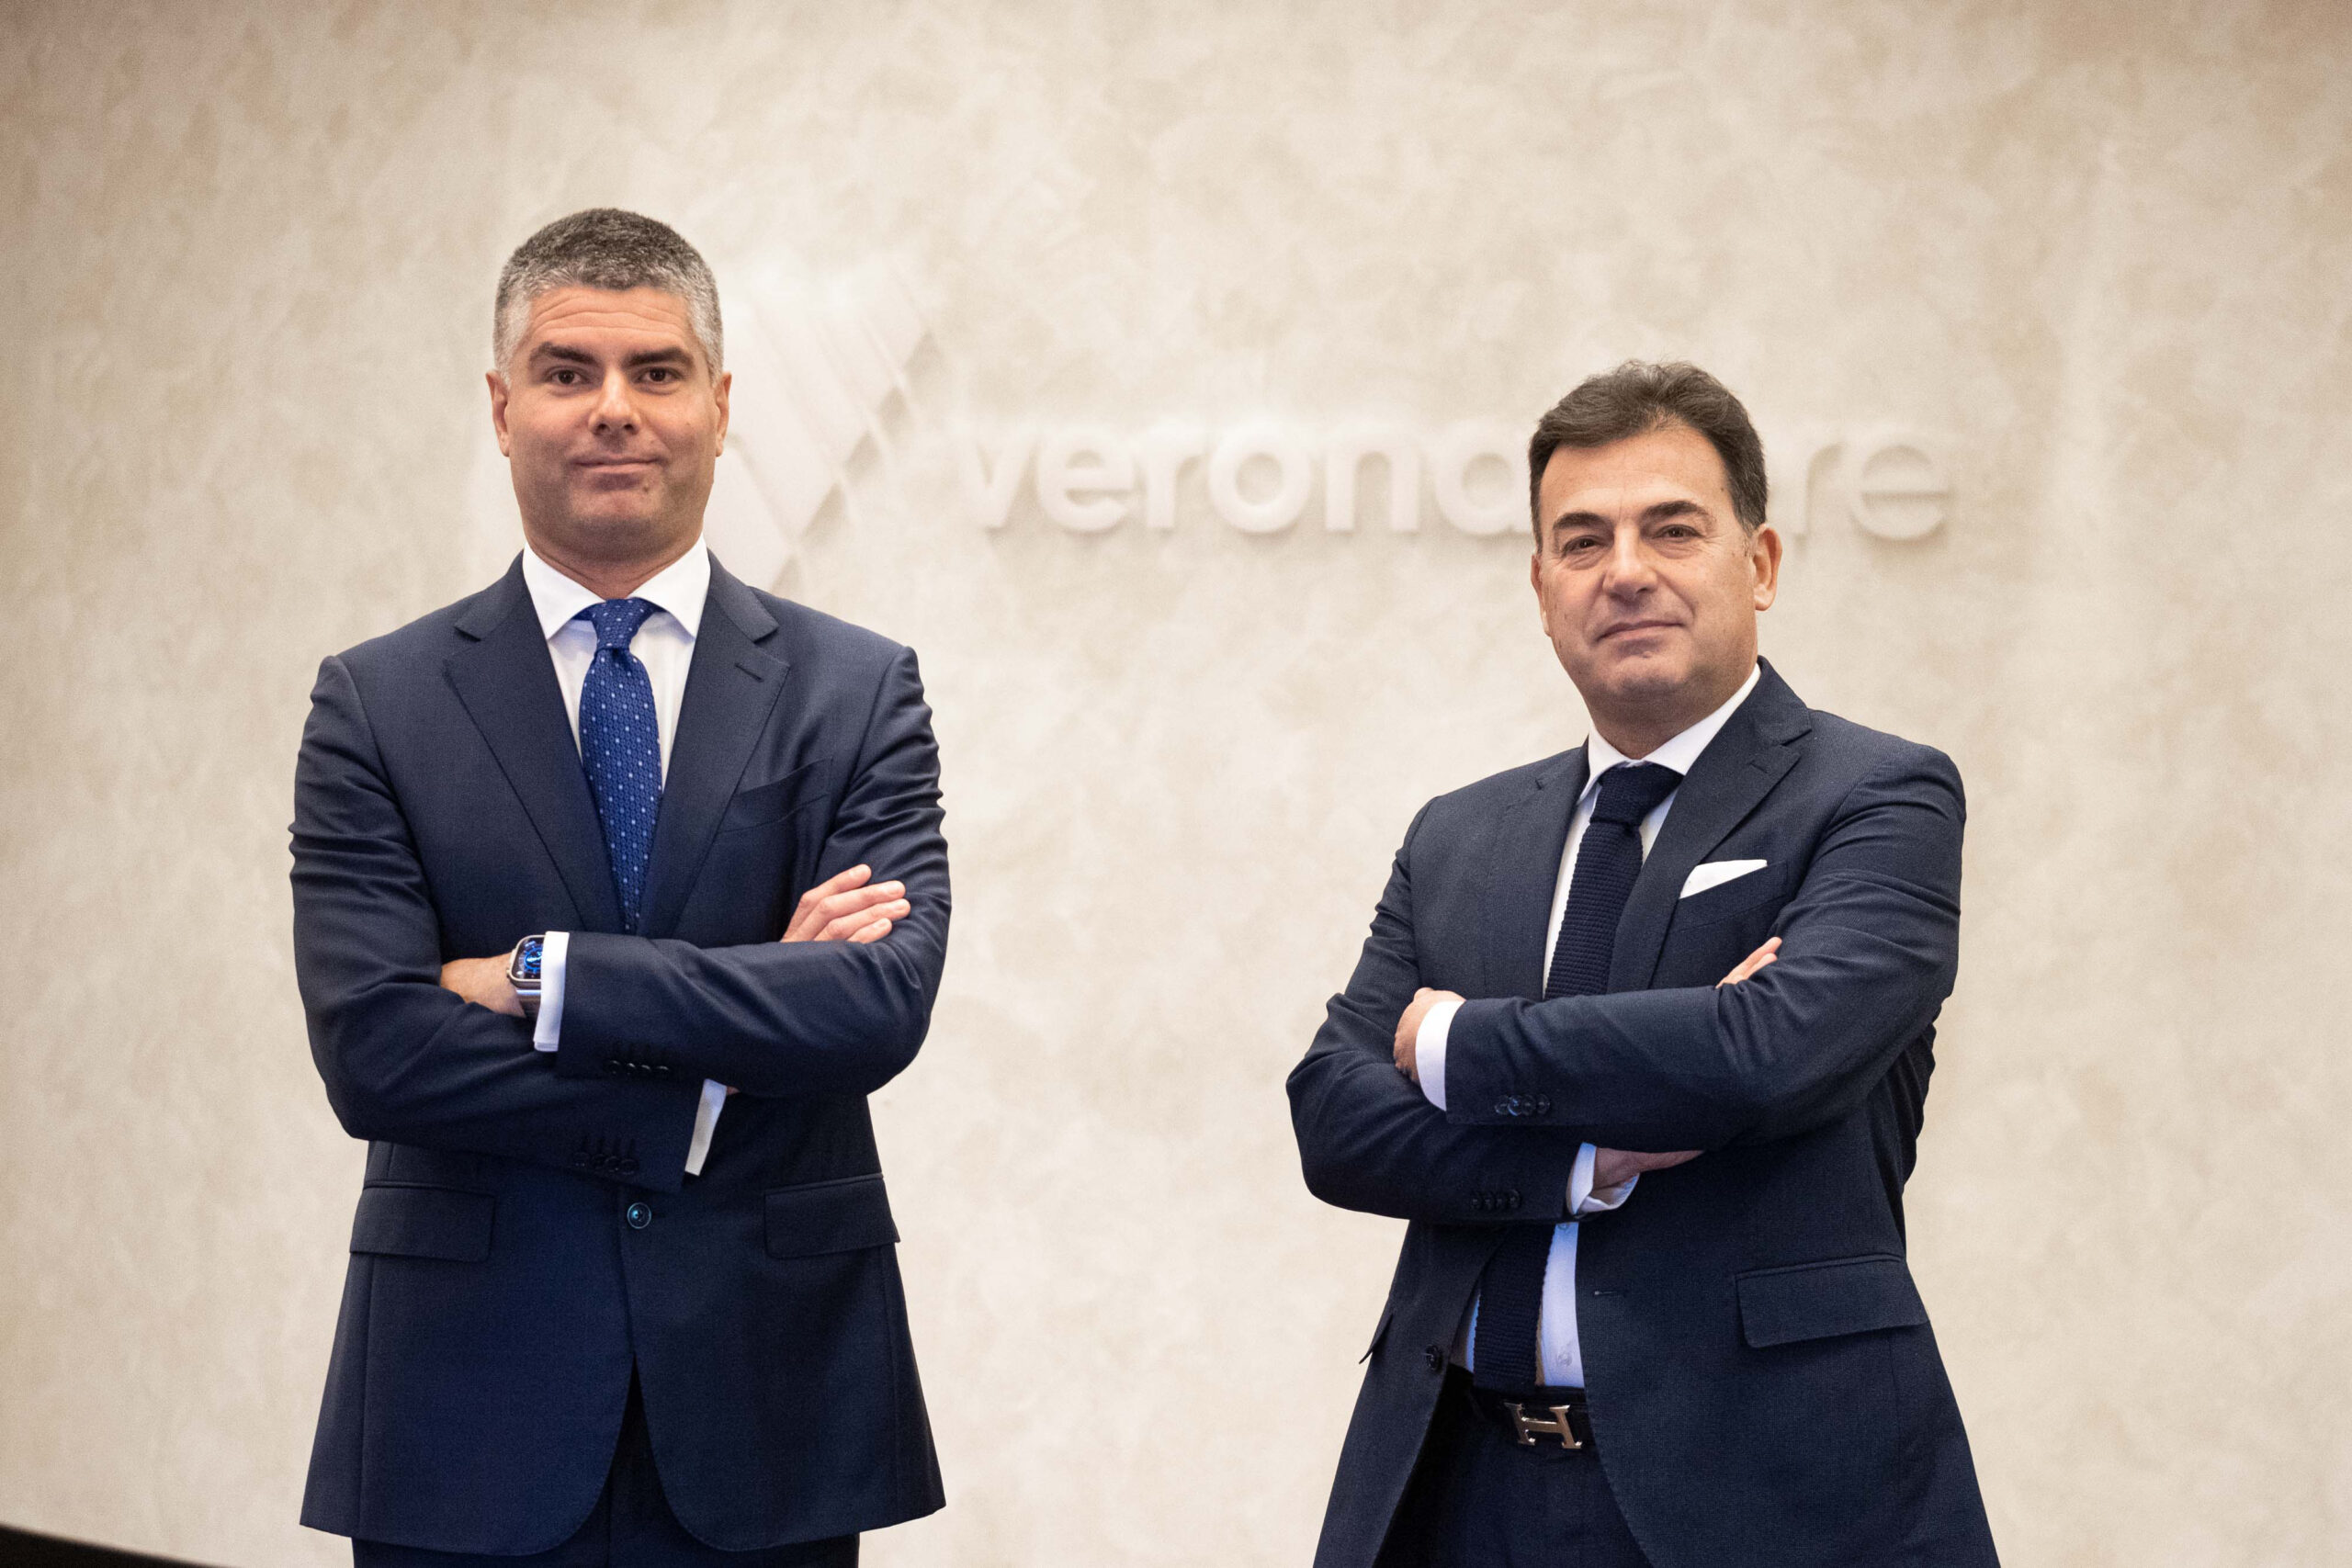 VeronaFiere, arrivano Raul Barbieri come direttore commerciale e Adolfo Rebughini come chief operating officer